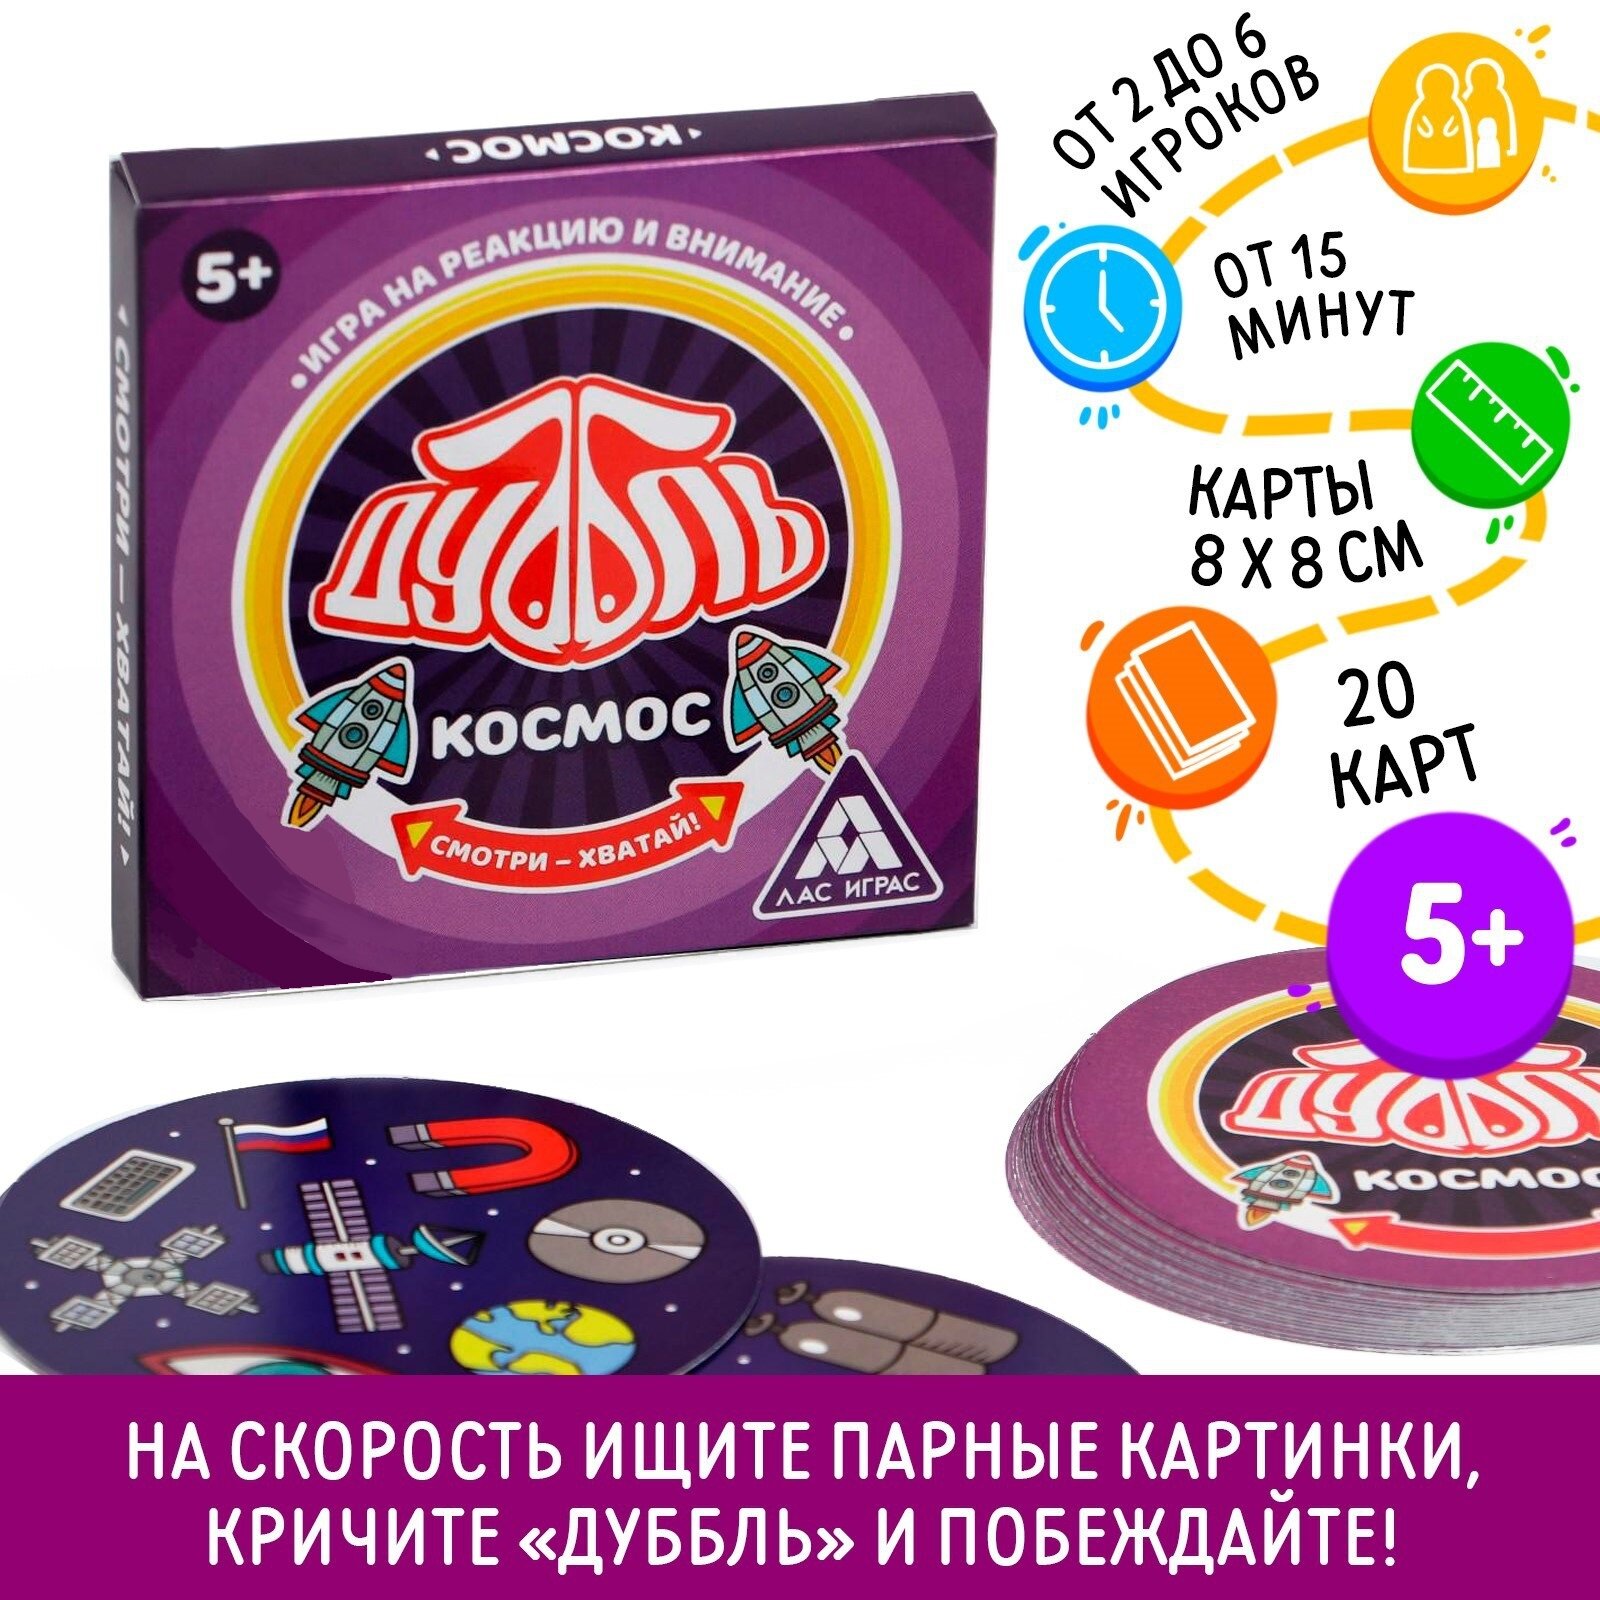 Настольная игра "Дуббль Космос", 20 карт